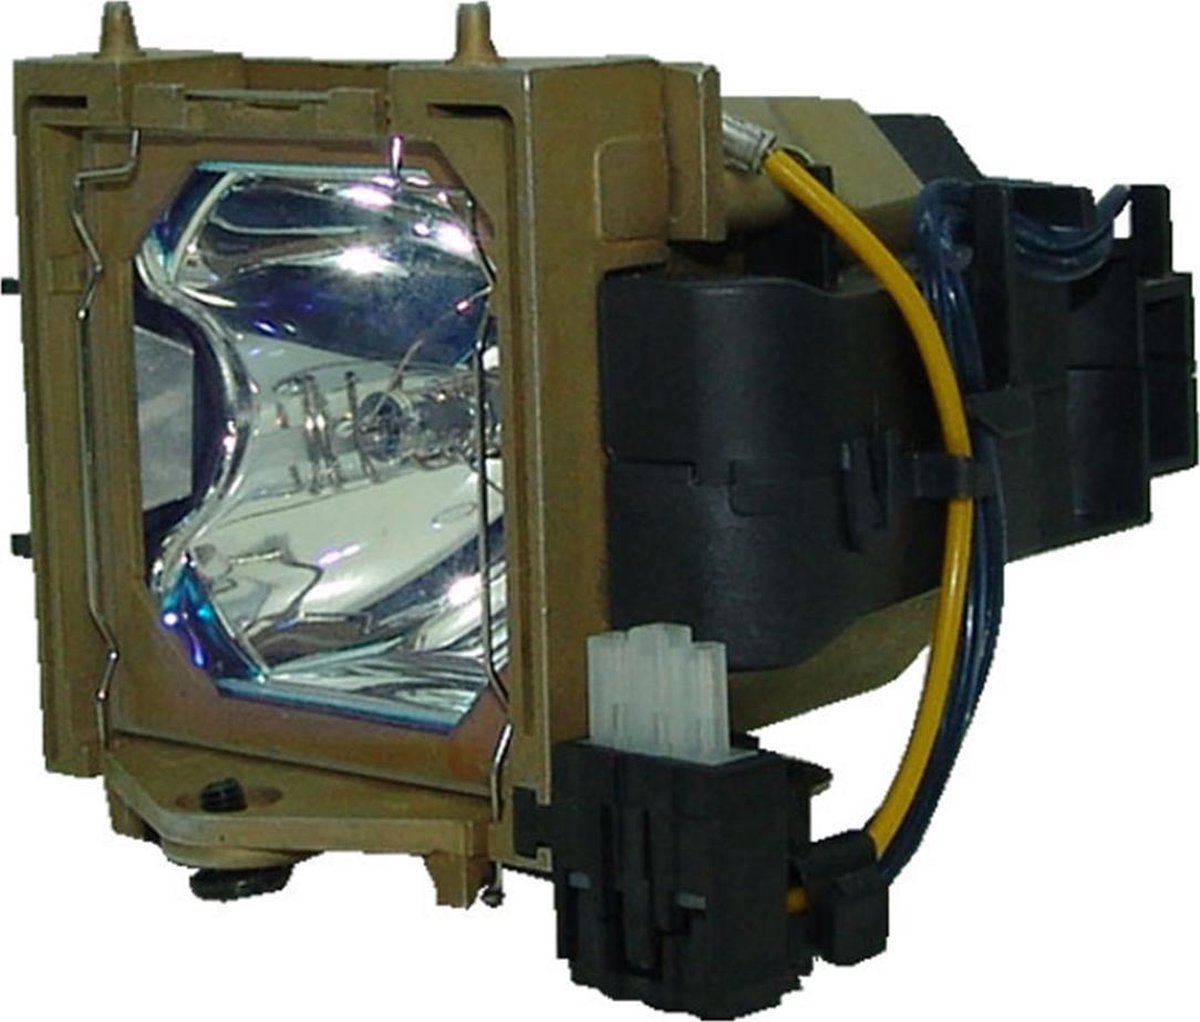 Beamerlamp geschikt voor de GEHA COMPACT 212 beamer, lamp code 60 270119. Bevat originele UHP lamp, prestaties gelijk aan origineel. - QualityLamp